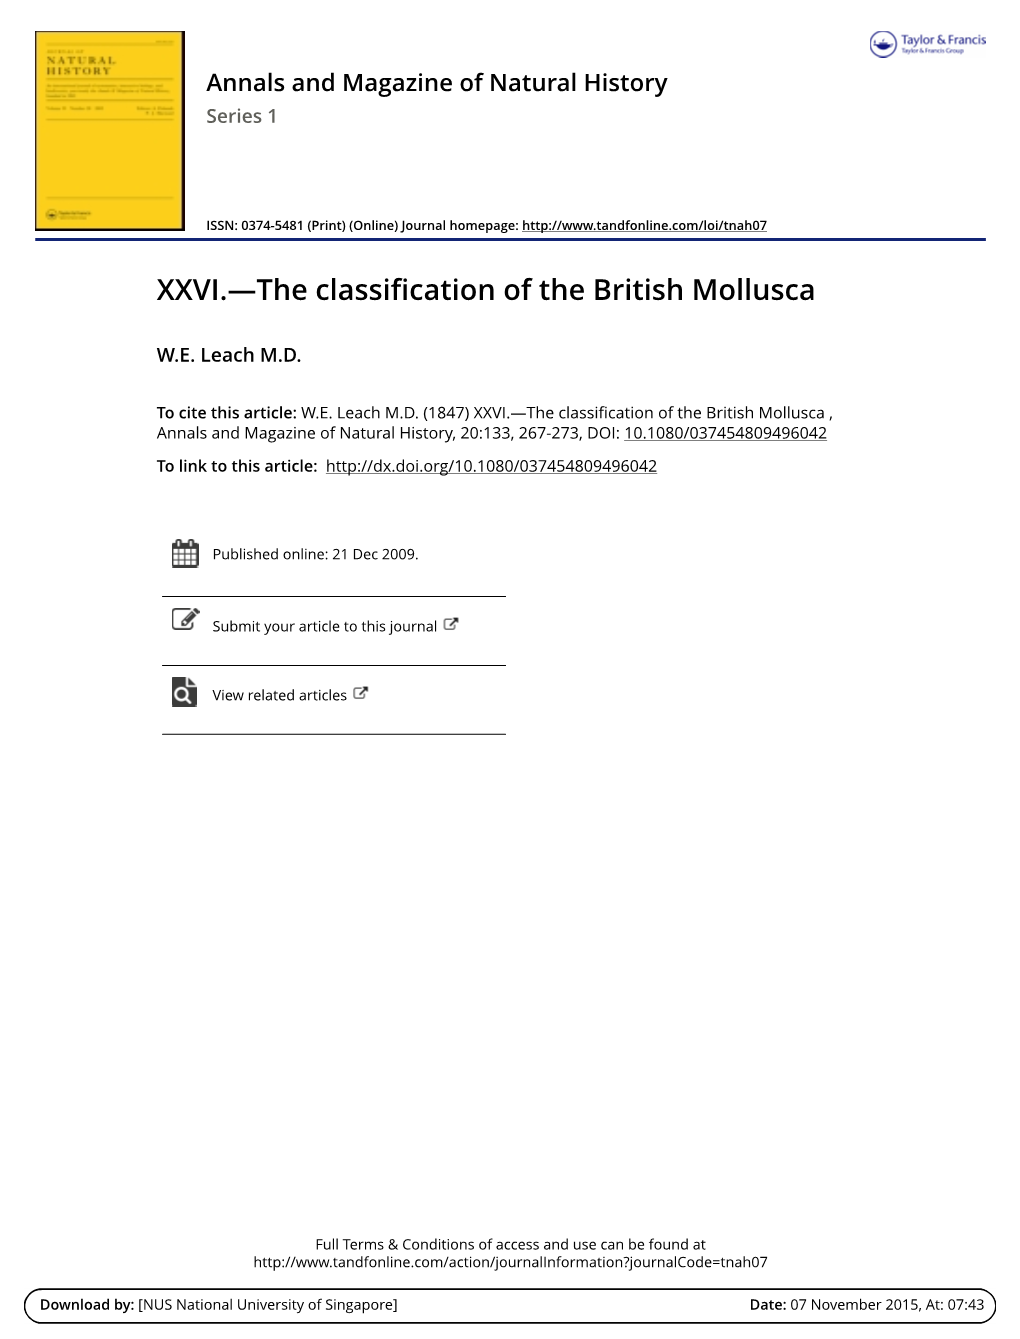 XXVI.—The Classification of the British Mollusca